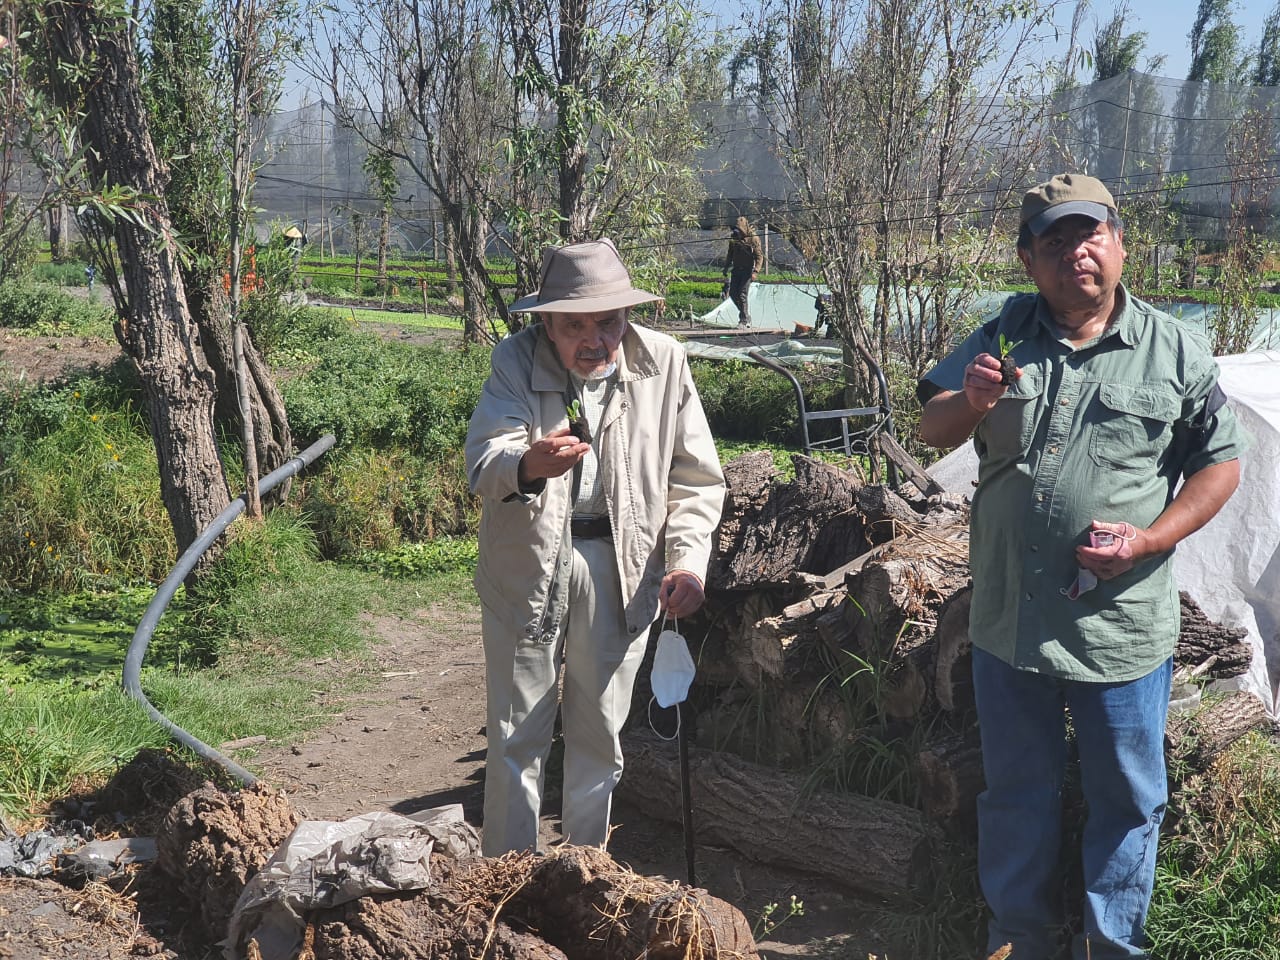 Registro de la visita a Xochimilco con el Arq. González Pozo. Fotografía: Elisa Drago